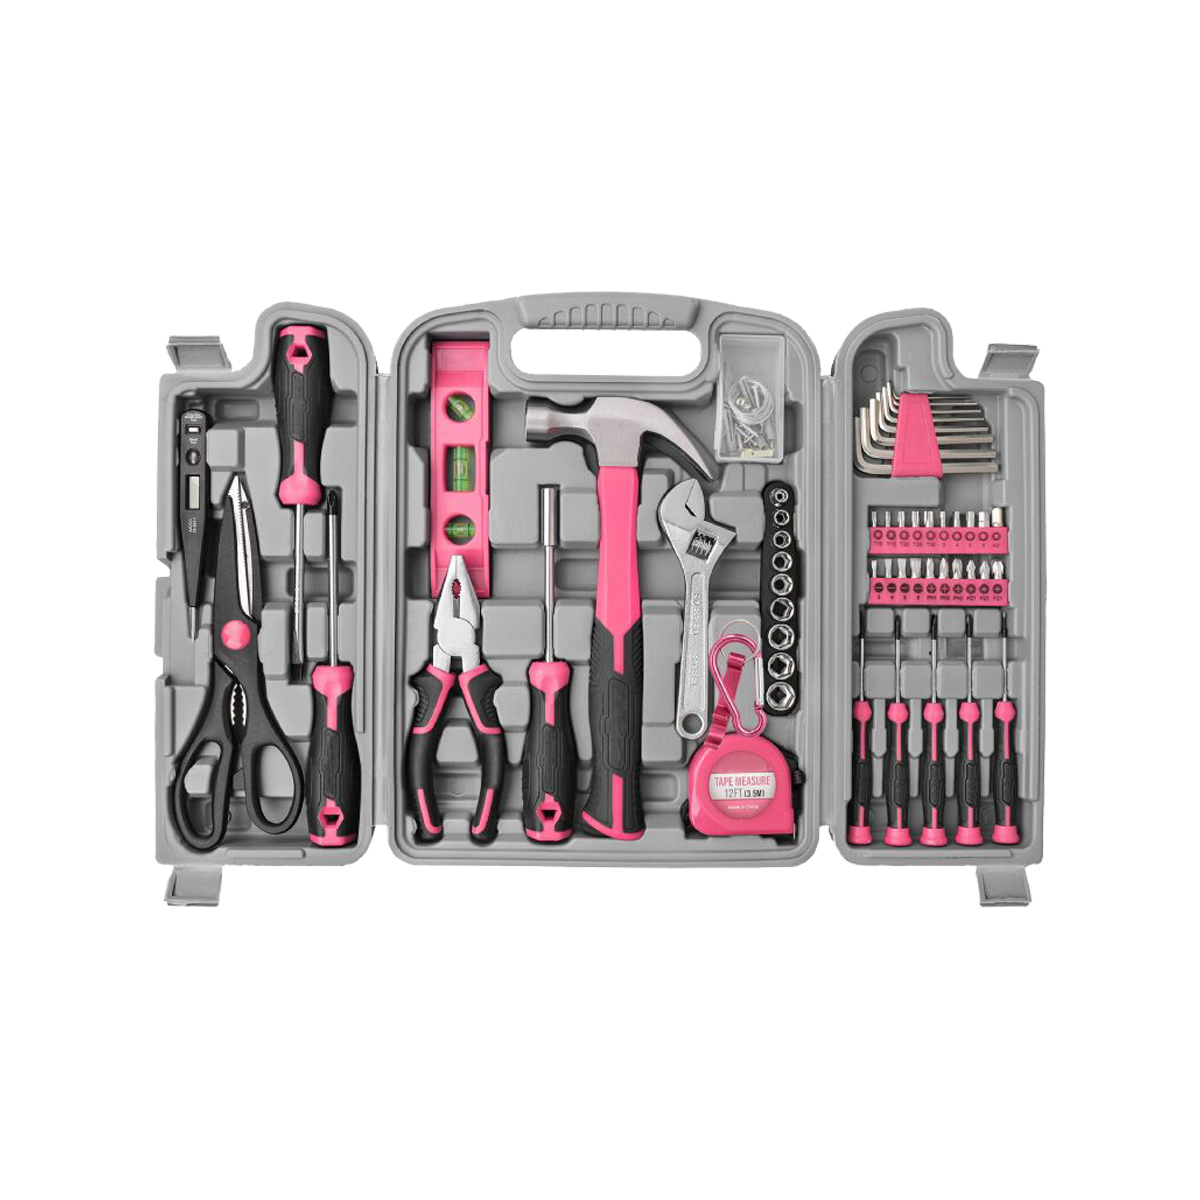 56 عدد کیت ابزار خانگی صورتی صورتی جعبه ابزار اولیه تعمیرات جعبه ابزار کامل ست ابزار زنانه